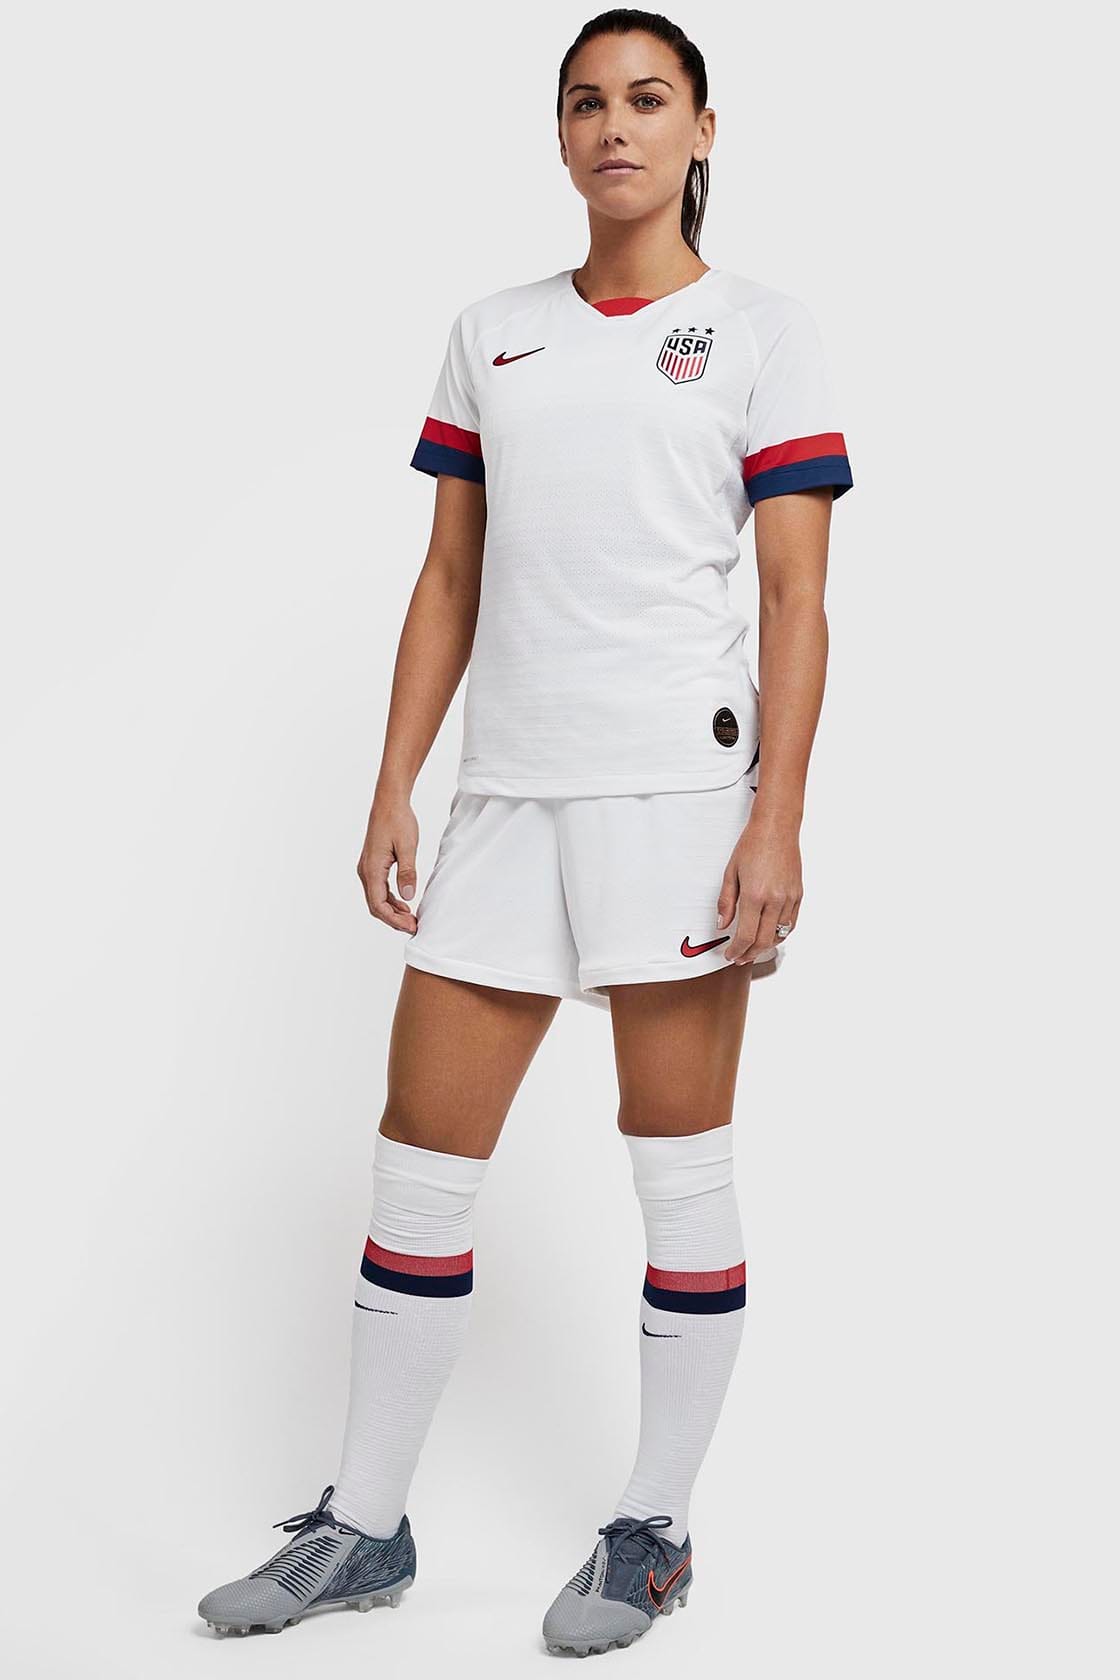 women's soccer jersey 2019